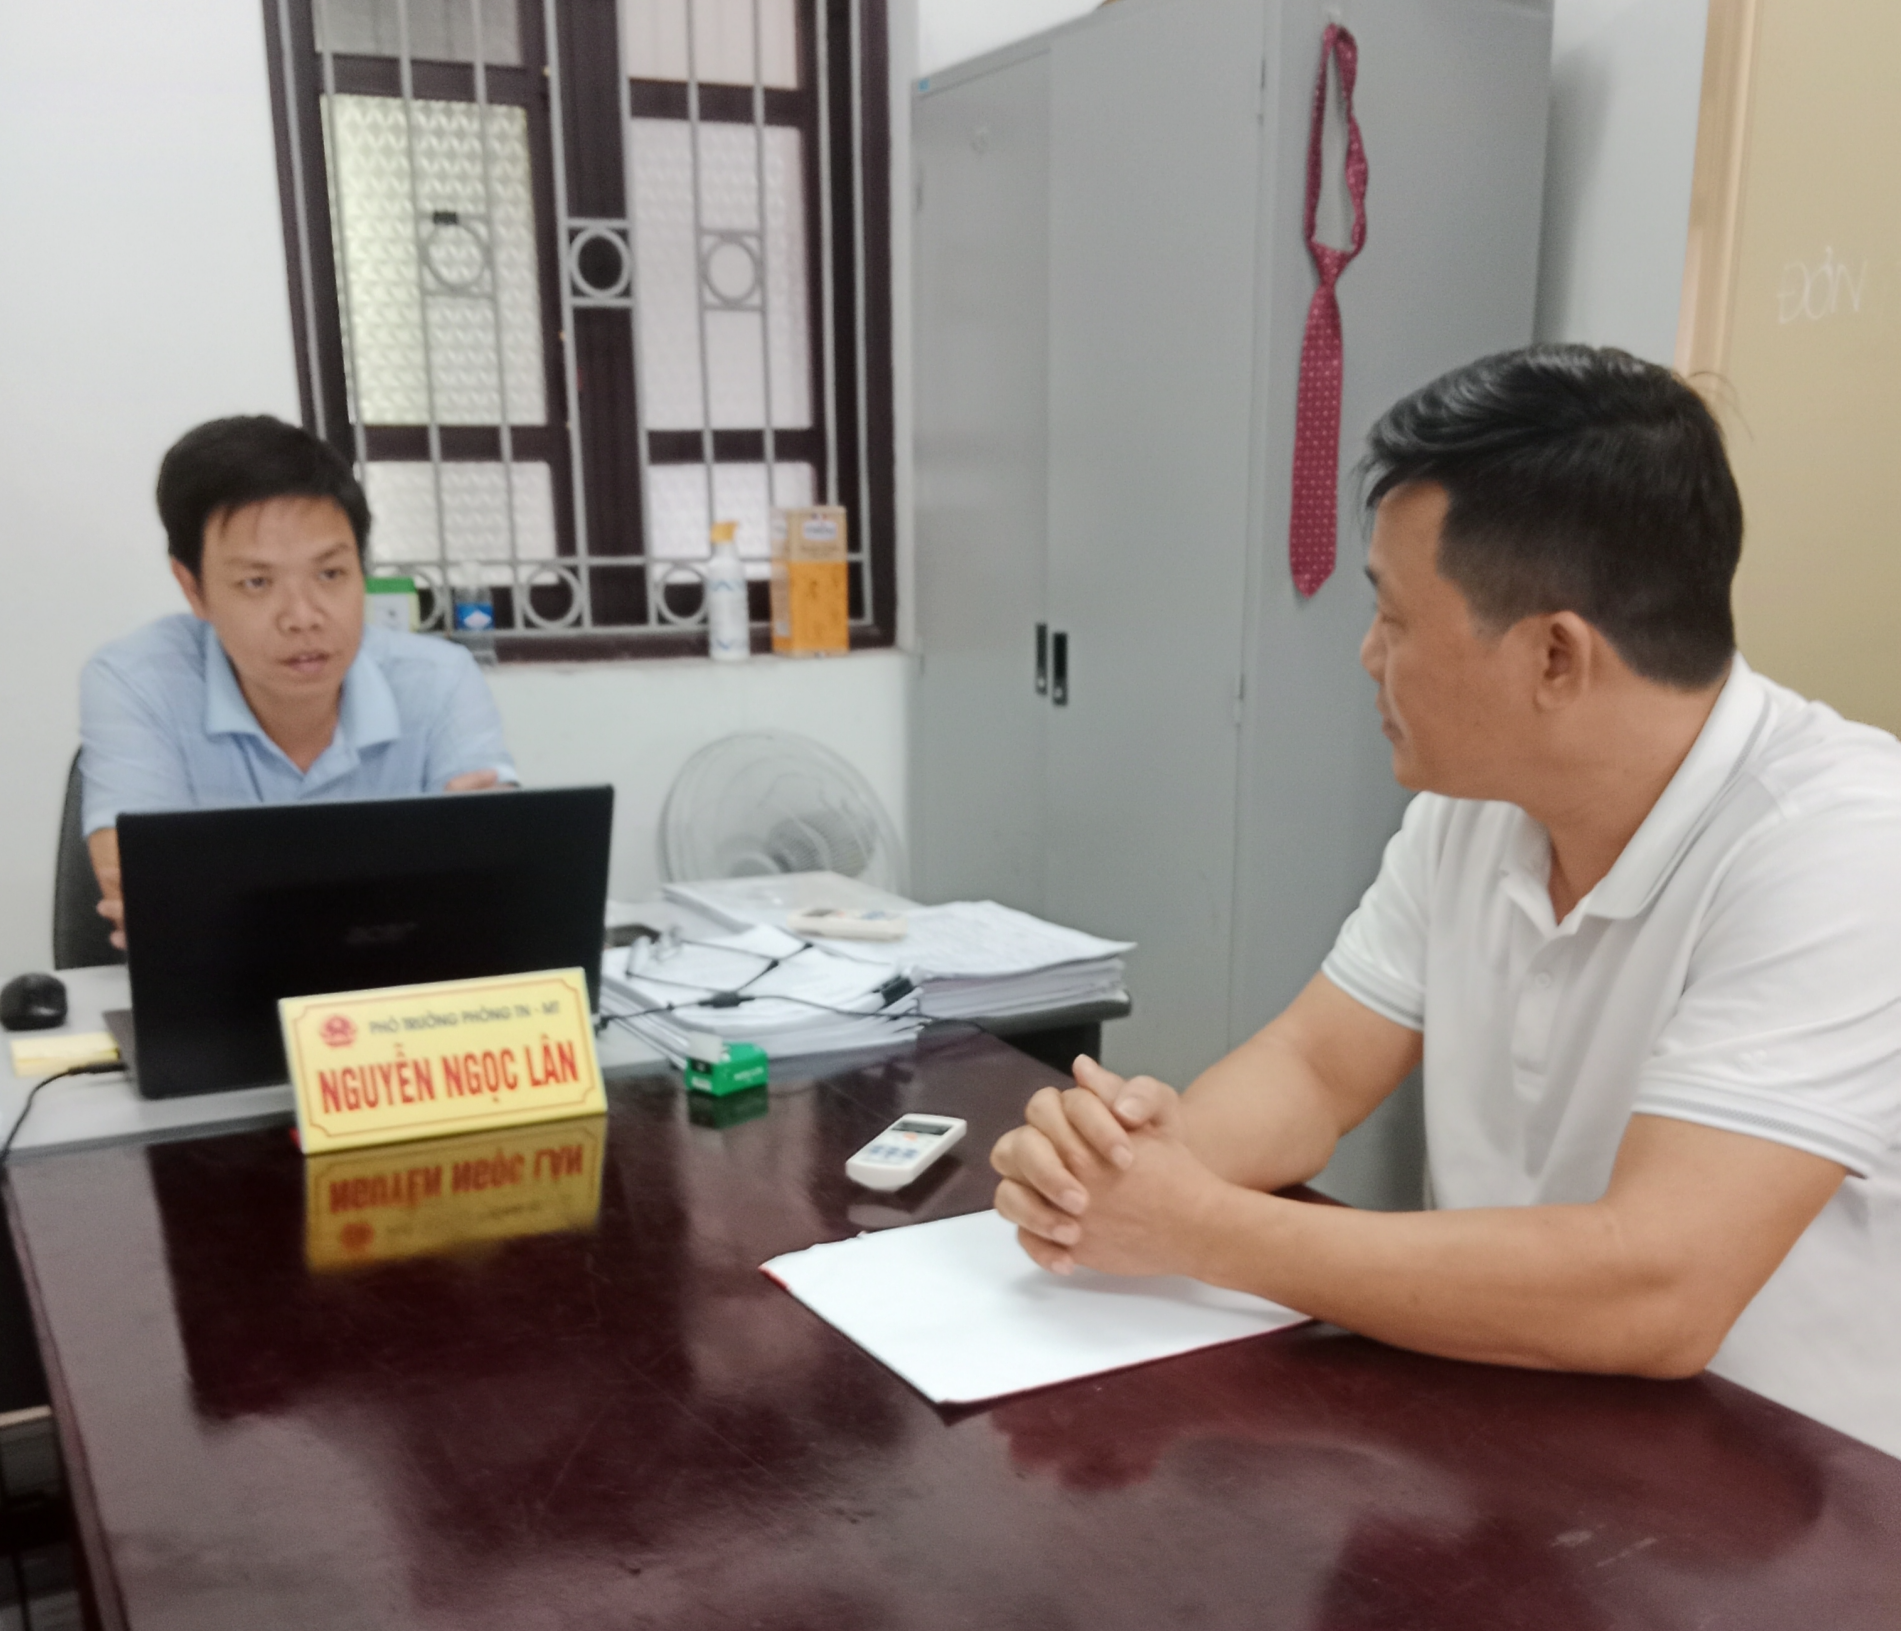 Can Lộc, Hà Tĩnh: Doanh nghiệp khai thác vật liệu xây dựng 